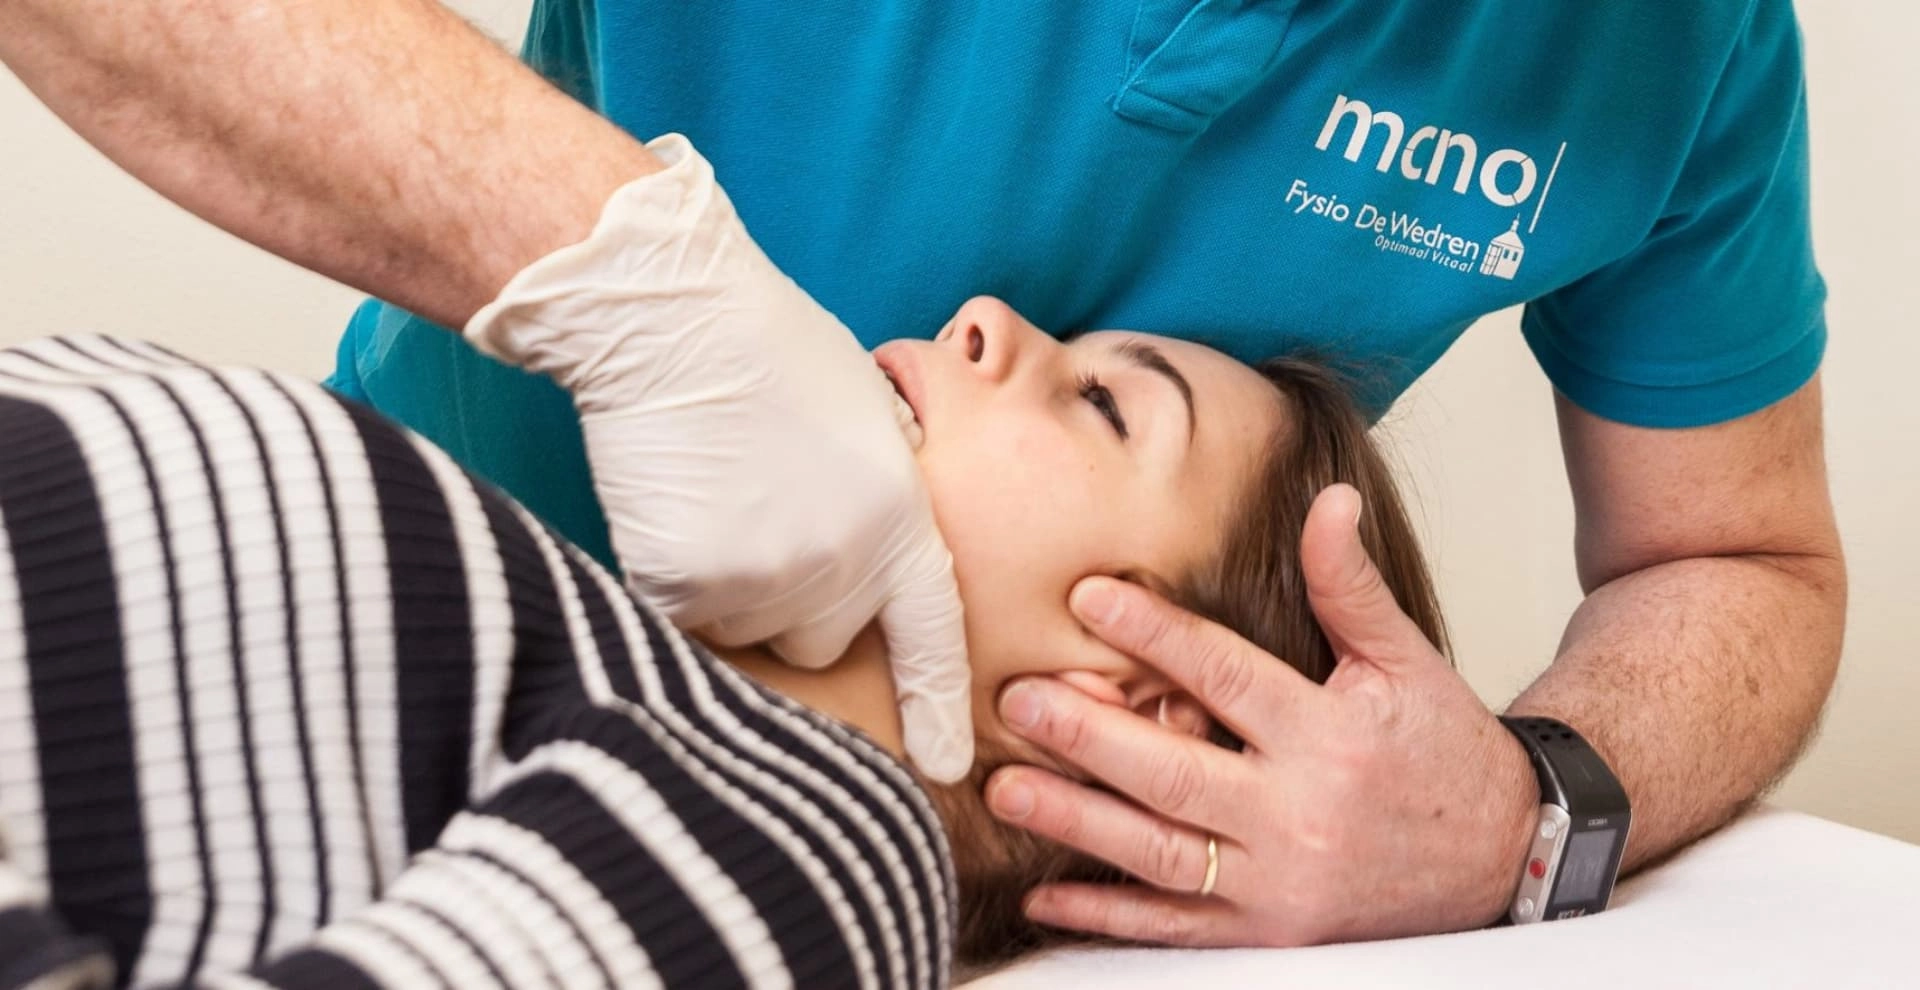 Hoofdpijn en nekpijn behandelen | Fysiotherapie MCNO De Wedren in Nijmegen